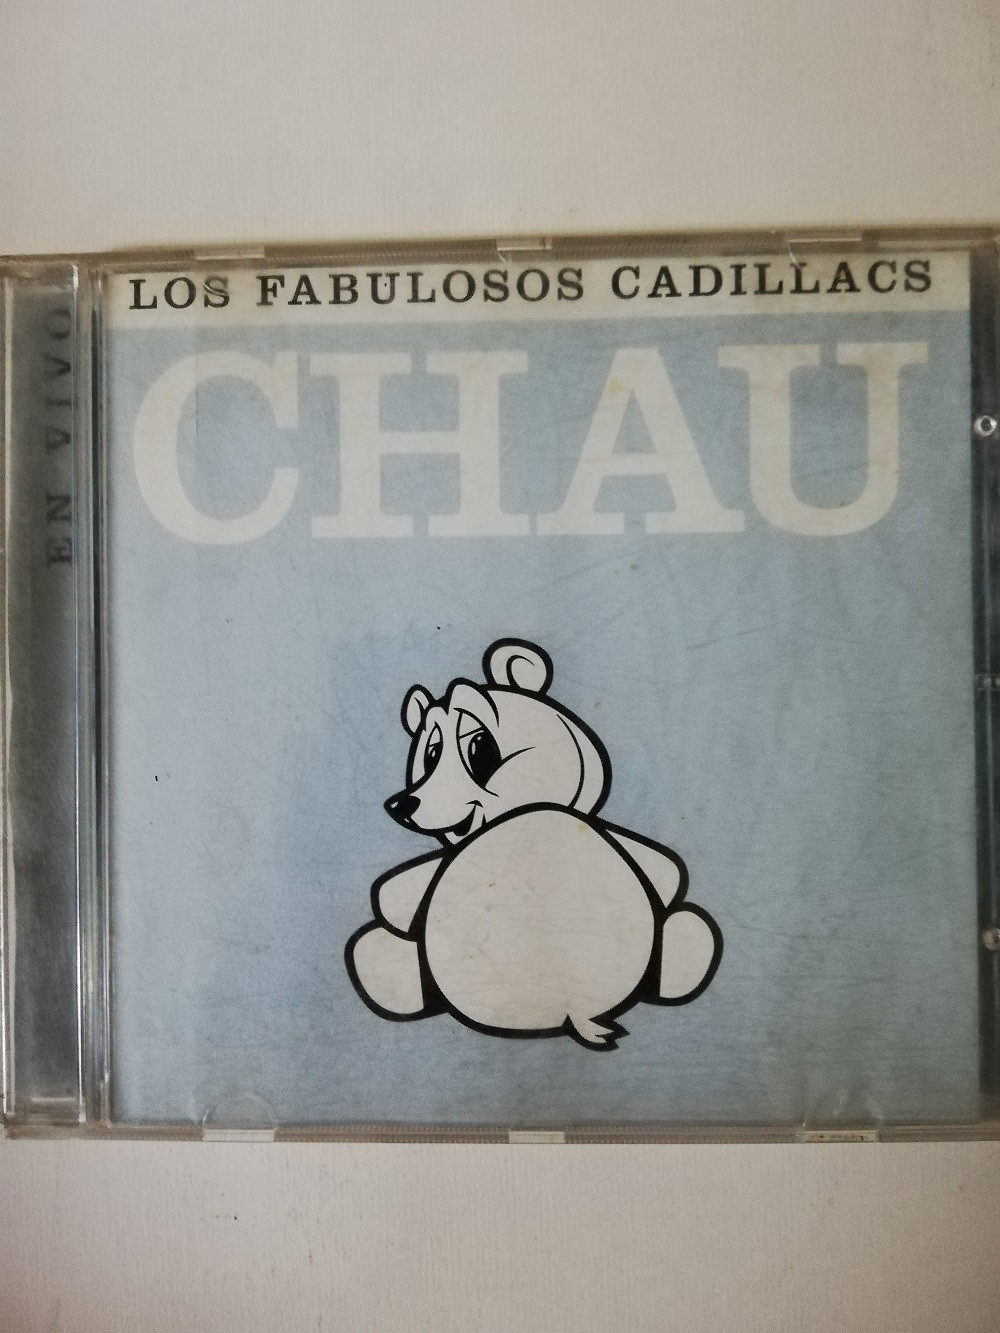 Imagen CD LOS FABULOSOS CADILLACS - CHAU